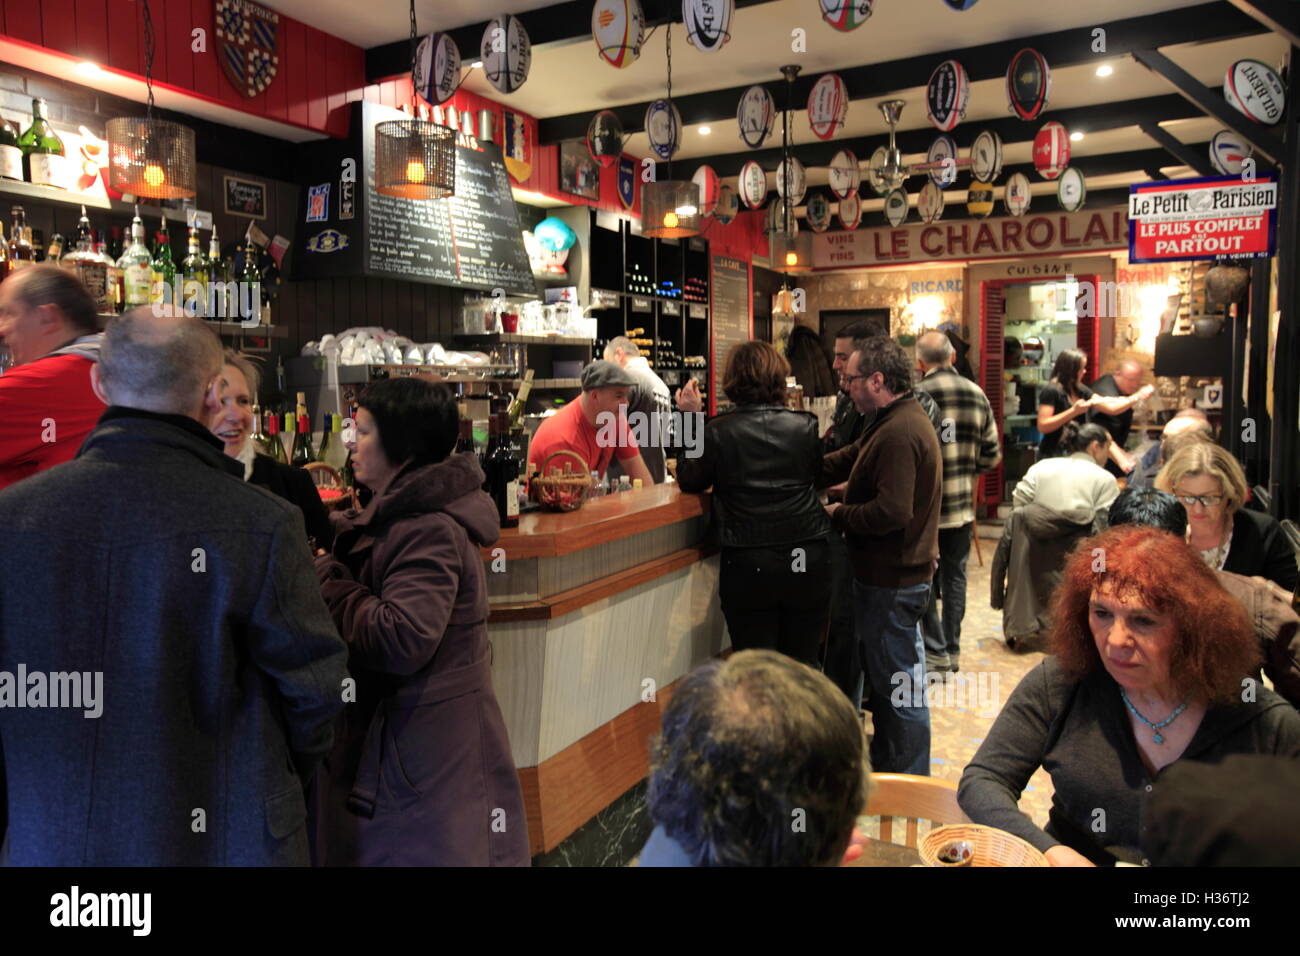 La vista interna del bar e cafe di Le Charolais nelle Marche d'Aligre (mercato Aligre). Parigi. Francia Foto Stock